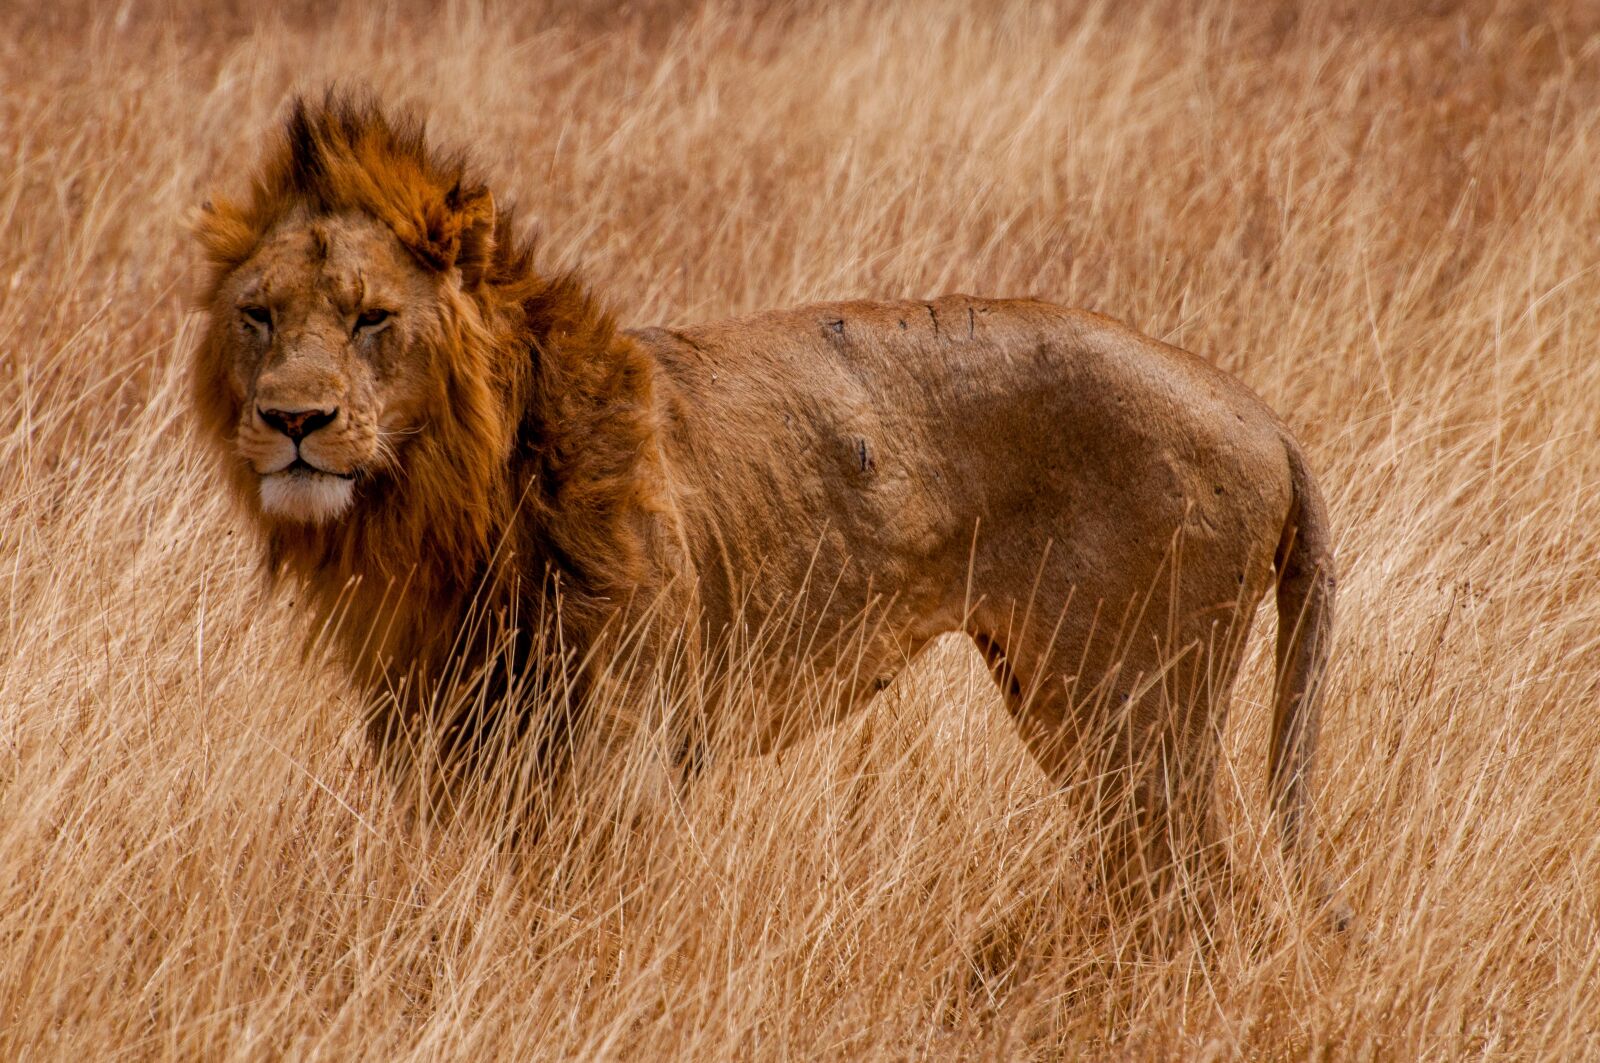 Nikon D5000 sample photo. Tanzania, animal, africa photography